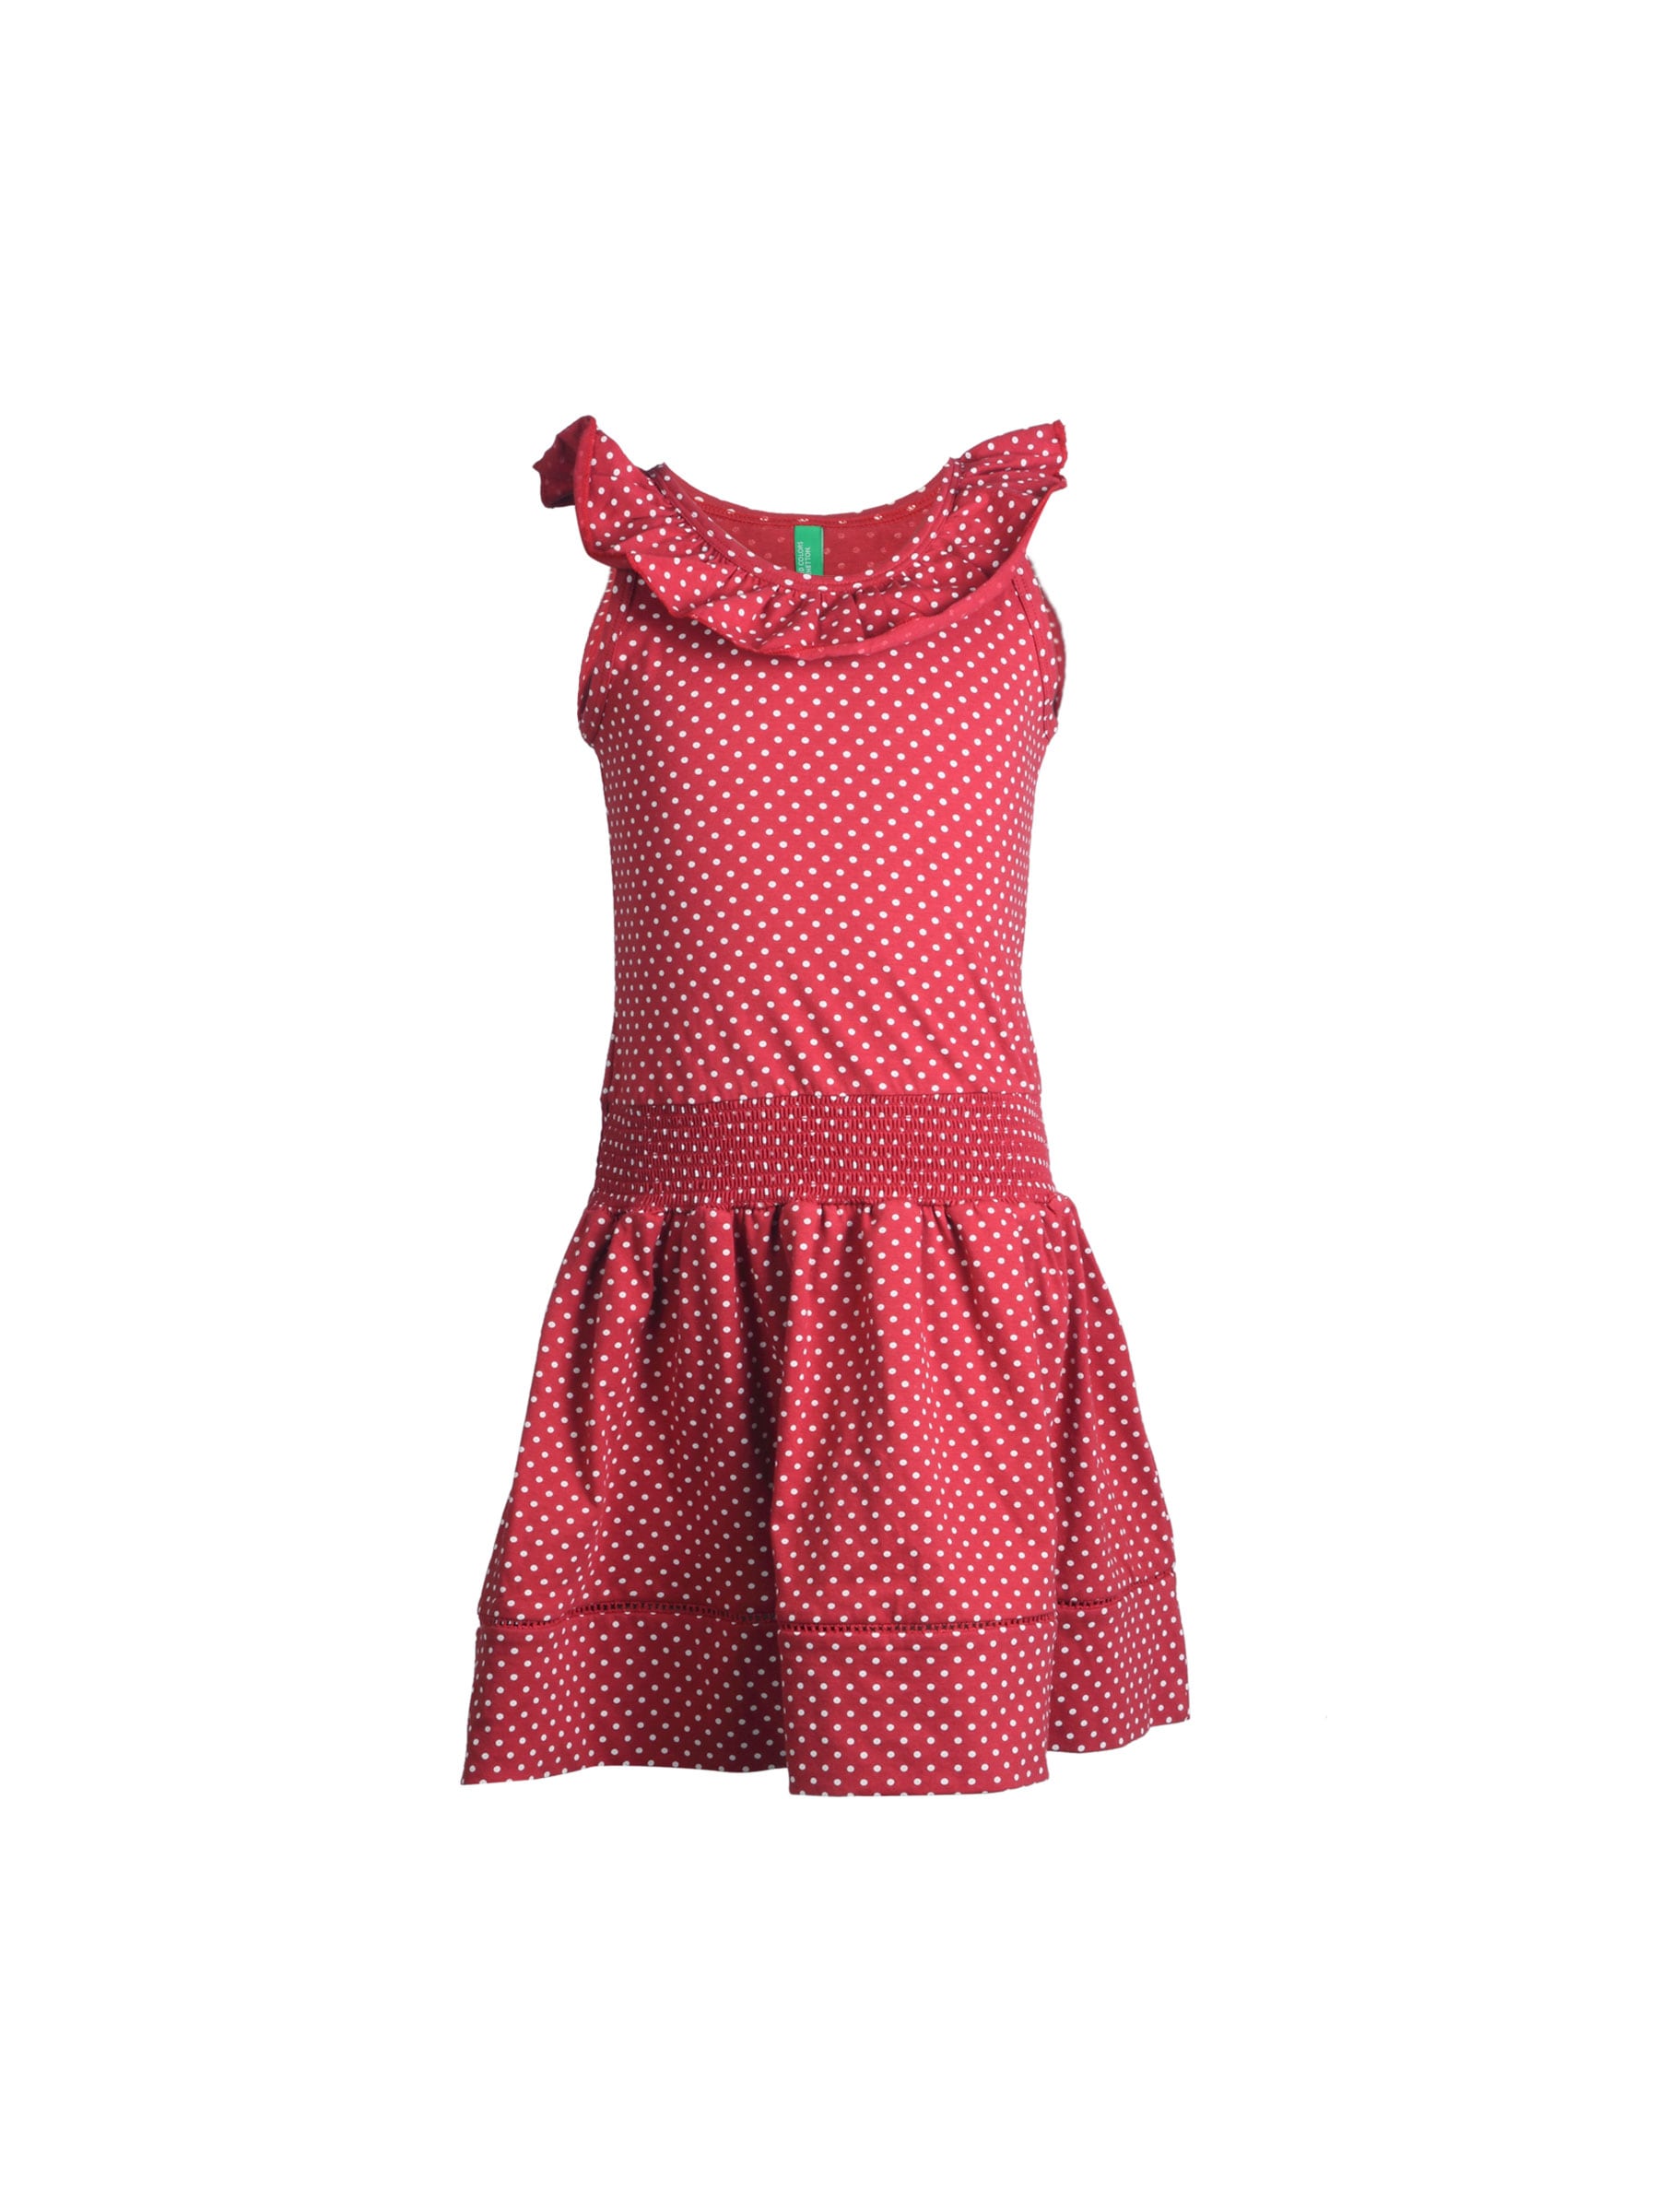 United Colors of Benetton Girls Red Polka Dot Dress